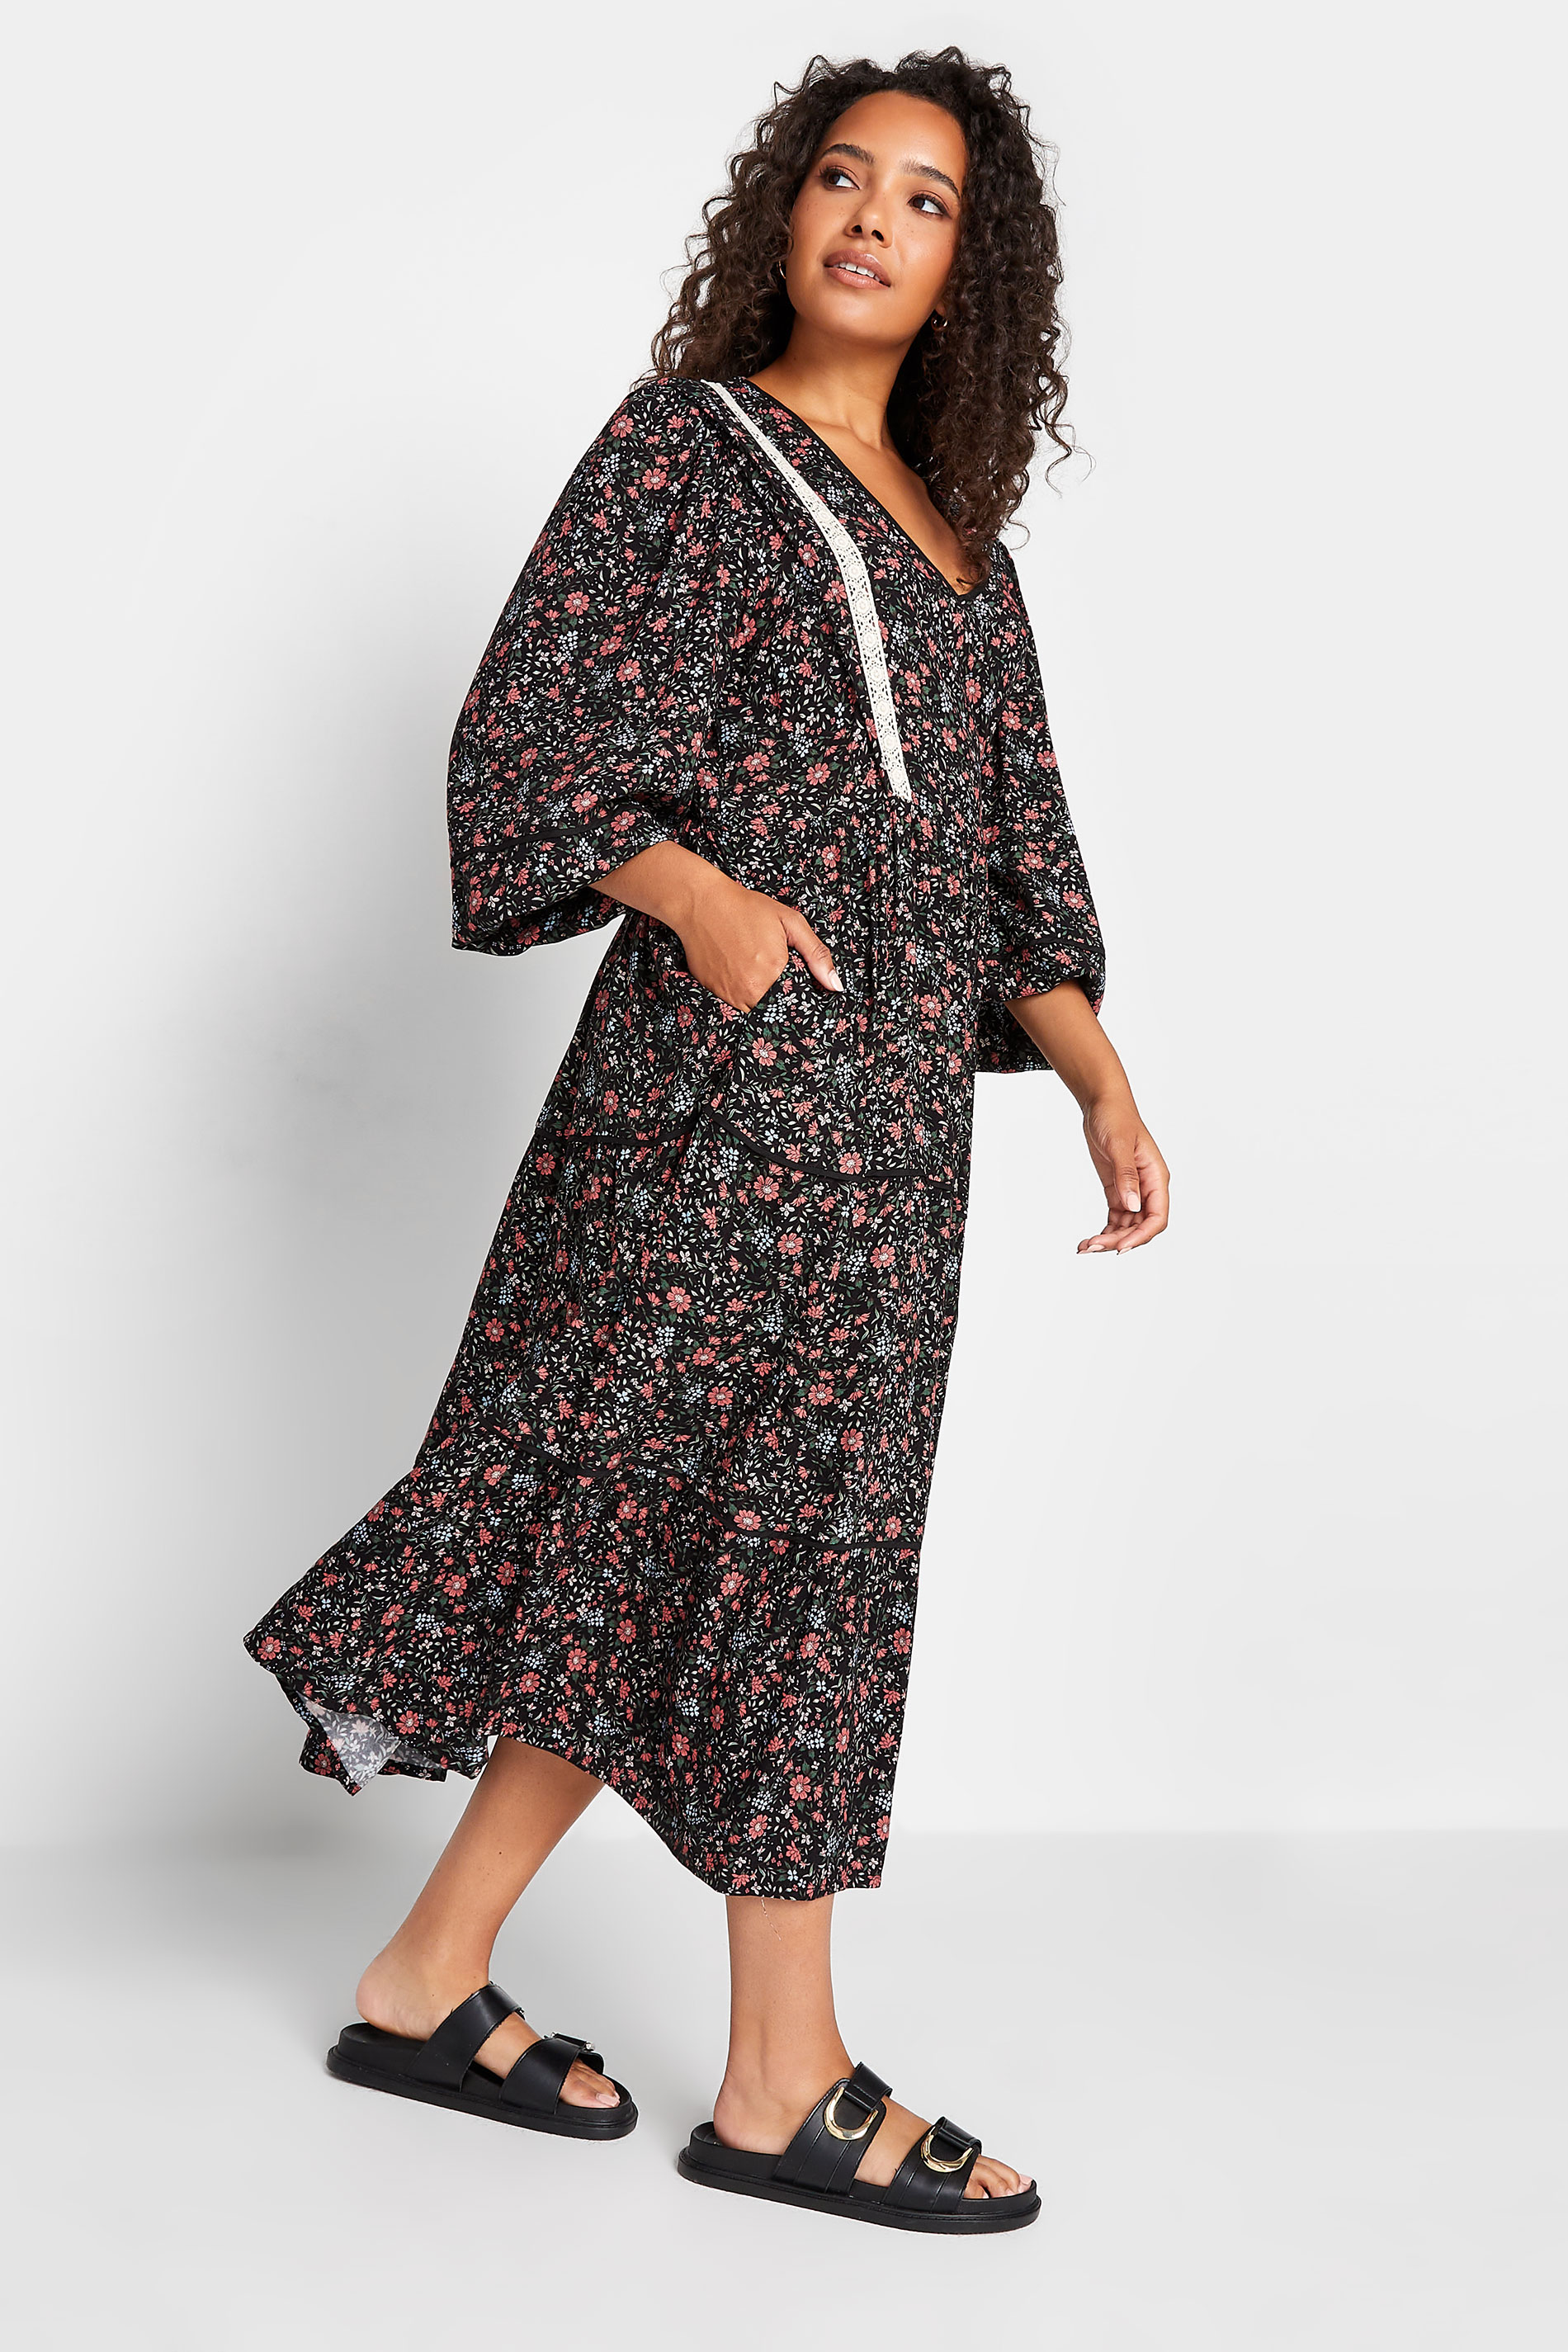 M&Co Black Floral Print Crochet Trim Midaxi Dress | M&Co 1